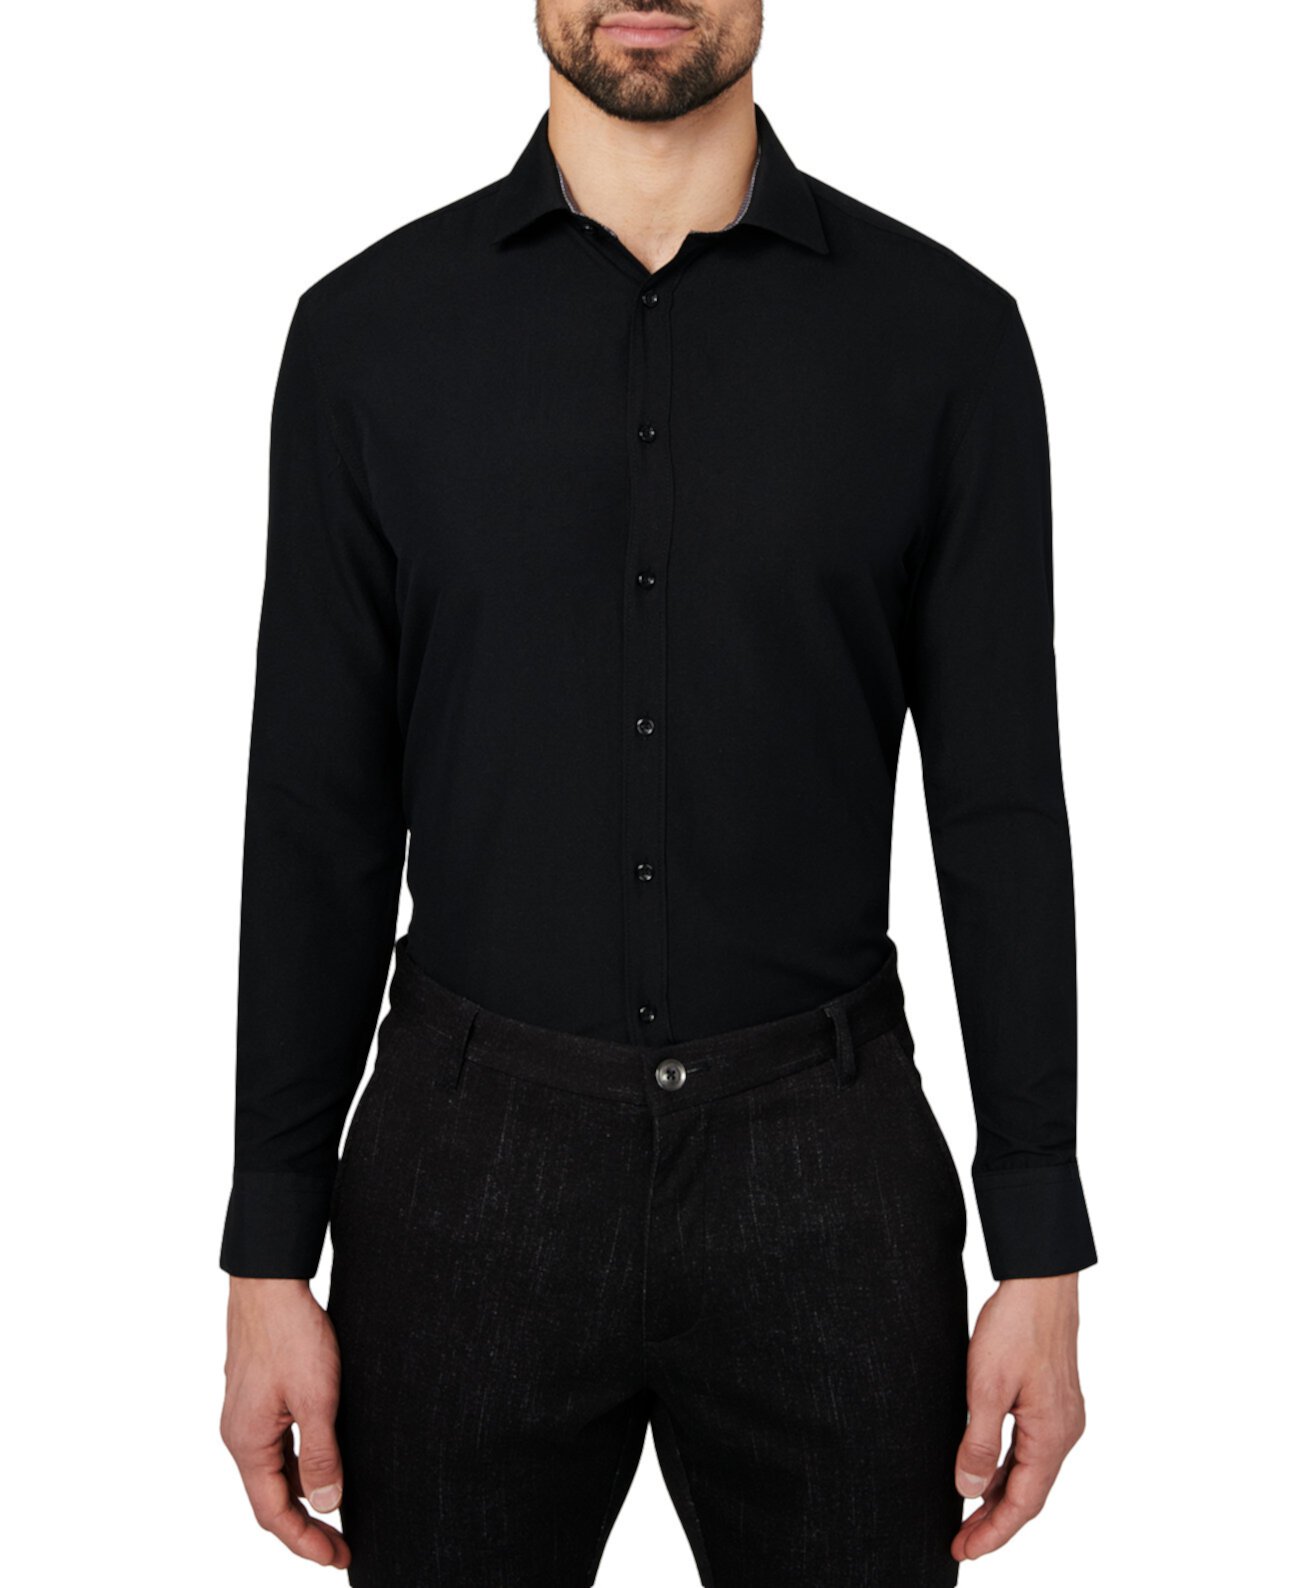 Мужская классическая рубашка Slim-Modern Fit Solid Performance Calabrum